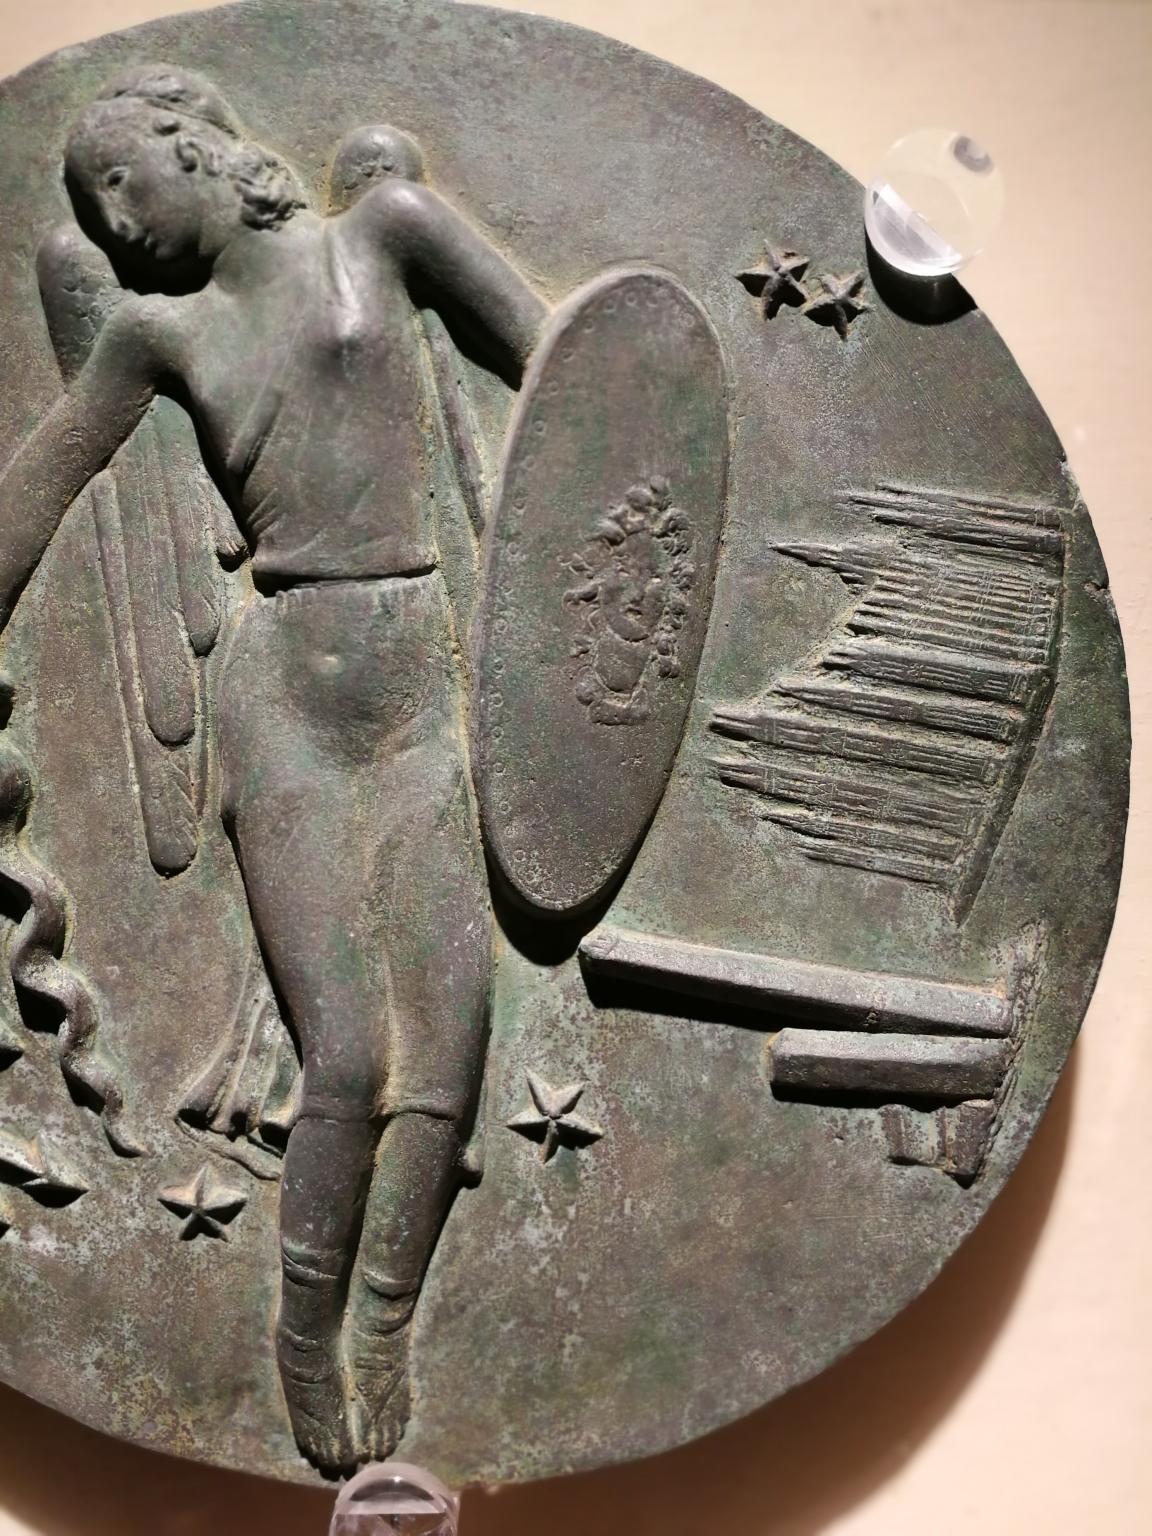 Ce relief en bronze ( 29 x 29 cm, socle en plexiglas 41 x 41 cm) est un modèle pour une médaille commémorative dédiée à l'armée de l'air italienne. 
Au centre se trouve l'Allégorie de l'armée de l'air italienne - représentée comme une femme volante